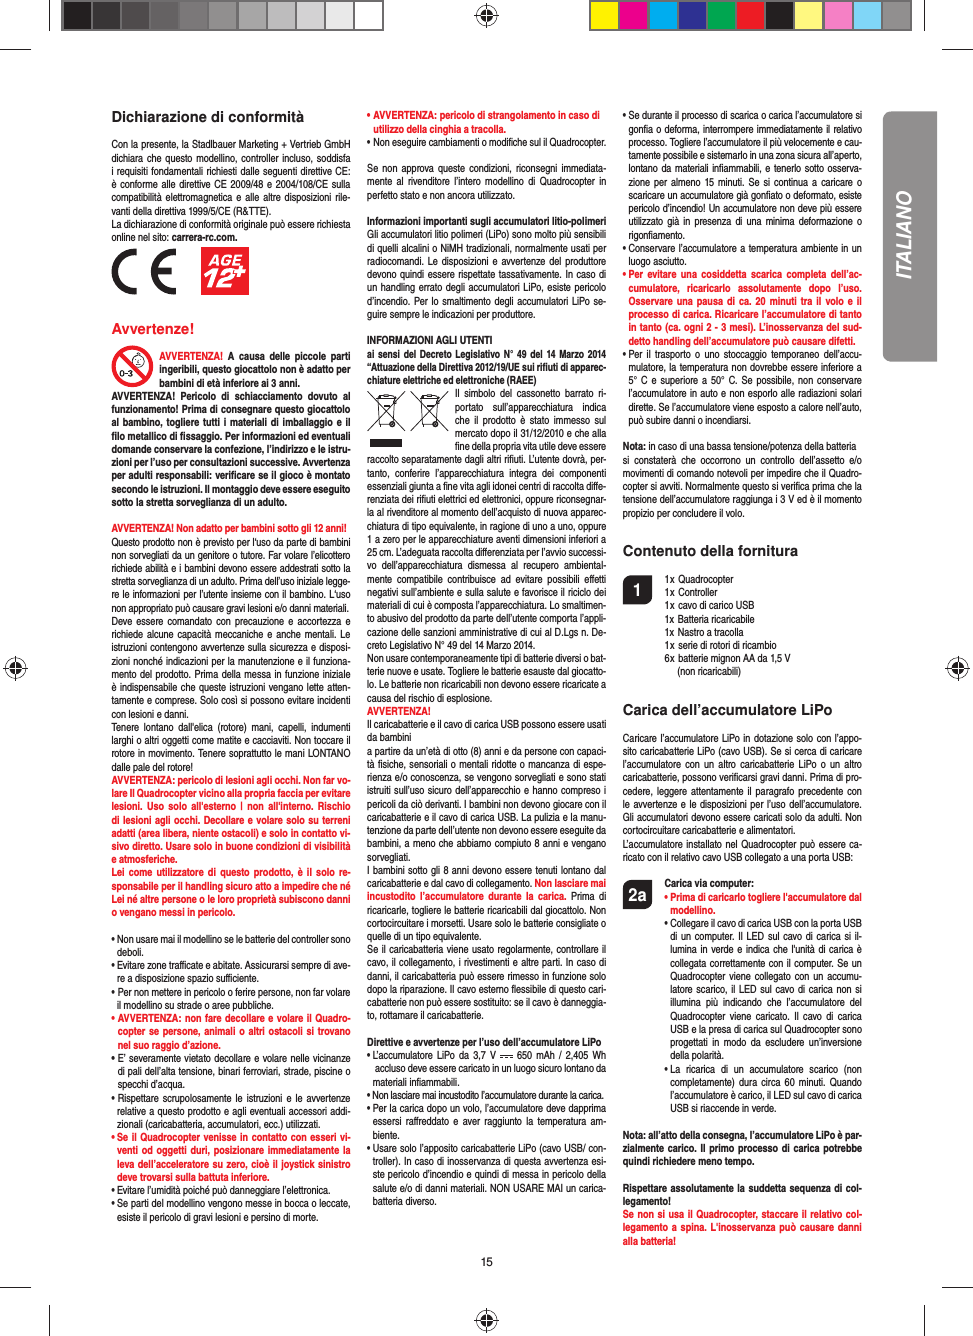 15Dichiarazione di conformitàCon la presente, la Stadlbauer Marketing + Vertrieb GmbH dichiara che questo modellino, controller incluso,  soddisfa i requisiti fondamentali richiesti dalle seguenti direttive CE: è conforme alle direttive CE  2009/48 e 2004/108/CE sulla compatibilità elettromagnetica e alle altre disposizioni rile-vanti della direttiva 1999/5/CE (R&amp;TTE).La dichiarazione di conformità originale può essere richiestaonline nel sito: carrera-rc.com.          Avvertenze! AVVERTENZA!  A  causa  delle  piccole  parti ingeribili, questo giocattolo non è adatto per bambini di età inferiore ai 3 anni. AVVERTENZA!  Pericolo  di  schiacciamento  dovuto  al funzionamento! Prima di consegnare questo giocattolo al bambino, togliere tutti i materiali di imballaggio e il ﬁ lo metallico di ﬁ ssaggio. Per informazioni ed eventuali domande conservare la confezione, l’indirizzo e le istru-zioni per l’uso per consultazioni successive. Avvertenza per adulti responsabili: veriﬁ care se il gioco è montato secondo le istruzioni. Il montaggio deve essere eseguito sotto la stretta sorveglianza di un adulto. AVVERTENZA! Non adatto per bambini sotto gli 12 anni! Questo prodotto non è previsto per l‘uso da parte di bambini non sorvegliati da un genitore o tutore. Far volare l’elicottero richiede abilità e i bambini devono essere addestrati sotto la stretta sorveglianza di un adulto. Prima dell’uso iniziale legge-re le informazioni per l’utente insieme con il bambino. L‘uso non appropriato può causare gravi lesioni e/o danni materiali.Deve essere comandato con  precauzione  e accortezza  e richiede alcune capacità meccaniche e anche mentali. Le istruzioni contengono avvertenze sulla sicurezza e disposi-zioni nonché indicazioni per la manutenzione e il funziona-mento del prodotto. Prima della messa in funzione iniziale è indispensabile che queste istruzioni vengano lette atten-tamente e comprese. Solo così si possono evitare incidenti con lesioni e danni. Tenere  lontano  dall&apos;elica  (rotore)  mani,  capelli,  indumenti larghi o altri oggetti come matite e cacciaviti. Non toccare il rotore in movimento. Tenere soprattutto le mani LONTANO dalle pale del rotore!AVVERTENZA: pericolo di lesioni agli occhi. Non far vo-lare Il Quadrocopter vicino alla propria faccia per evitare lesioni.  Uso  solo all&apos;esterno  |  non  all&apos;interno. Rischio di lesioni agli occhi. Decollare e volare solo su terreni adatti (area libera, niente ostacoli) e solo in contatto vi-sivo diretto. Usare solo in buone condizioni di visibilità e atmosferiche. Lei  come  utilizzatore  di questo  prodotto,  è il solo  re-sponsabile per il handling sicuro atto a impedire che né Lei né altre persone o le loro proprietà subiscono danni o vengano messi in pericolo.•  Non usare mai il modellino se le batterie del controller sono deboli. •  Evitare zone traﬃ  cate e abitate. Assicurarsi sempre di ave-re a disposizione spazio suﬃ  ciente. •   Per non mettere in pericolo o ferire persone, non far volare il modellino su strade o aree pubbliche. •  AVVERTENZA: non fare decollare e volare il Quadro-copter se persone,  animali o altri ostacoli si trovano nel suo raggio d’azione.•  E’ severamente vietato decollare e volare nelle vicinanze di pali dell’alta tensione, binari ferroviari, strade, piscine o specchi d’acqua. •   Rispettare  scrupolosamente  le istruzioni  e  le  avvertenze relative a questo prodotto e agli eventuali accessori addi-zionali (caricabatteria, accumulatori, ecc.) utilizzati.•  Se il Quadrocopter venisse in contatto con esseri vi-venti od  oggetti  duri, posizionare immediatamente la leva dell’acceleratore su zero, cioè il joystick sinistro deve trovarsi sulla battuta inferiore. •  Evitare l’umidità poiché può danneggiare l’elettronica. •  Se parti del modellino vengono messe in bocca o leccate, esiste il pericolo di gravi lesioni e persino di morte.• AVVERTENZA: pericolo di strangolamento in caso di   utilizzo della cinghia a tracolla. • Non eseguire cambiamenti o modiﬁ che sul il Quadrocopter.Se  non  approva queste condizioni, riconsegni  immediata-mente  al  rivenditore  l’intero  modellino di  Quadrocopter  in perfetto stato e non ancora utilizzato.Informazioni importanti sugli accumulatori litio-polimeriGli accumulatori litio polimeri (LiPo) sono molto più sensibili di quelli alcalini o NiMH tradizionali, normalmente usati per radiocomandi. Le disposizioni e avvertenze del produttore devono quindi essere rispettate tassativamente. In caso di un handling errato degli accumulatori LiPo, esiste pericolo d’incendio. Per lo smaltimento degli accumulatori LiPo se-guire sempre le indicazioni per produttore.INFORMAZIONI AGLI UTENTIai sensi del Decreto Legislativo N° 49 del 14 Marzo 2014 “Attuazione della Direttiva 2012/19/UE sui riﬁ uti di apparec-chiature elettriche ed elettroniche (RAEE)Il  simbolo  del  cassonetto  barrato  ri-portato  sull’apparecchiatura  indica che  il prodotto  è  stato  immesso  sul mercato dopo il 31/12/2010 e che alla ﬁ ne della propria vita utile deve essere raccolto separatamente dagli altri riﬁ uti. L’utente dovrà, per-tanto,  conferire  l’appa recchiatura  integra  dei  componenti essenziali giunta a ﬁ ne vita agli idonei centri di raccolta diﬀ e-renziata dei riﬁ uti elettrici ed elettronici, oppure riconsegnar-la al rivenditore al momento dell’acquisto di nuova apparec-chiatura di tipo equivalente, in ragione di uno a uno, oppure 1 a zero per le apparecchiature aventi dimensioni inferiori a 25 cm. L’adeguata raccolta diﬀ erenziata per l’avvio successi-vo  dell’apparecchiatura  dismessa  al  recupero  ambiental-mente  compatibile  contribuisce  ad  evitare  possibili  eﬀ etti negativi sull’ambiente e sulla salute e favorisce il riciclo dei materiali di cui è composta l’apparecchiatura. Lo smaltimen-to abusivo del prodotto da parte dell’utente comporta l’appli-cazione delle sanzioni amministrative di cui al D.Lgs n. De-creto Legislativo N° 49 del 14 Marzo 2014.Non usare contemporaneamente tipi di batterie diversi o bat-terie nuove e usate. Togliere le batterie esauste dal giocatto-lo. Le batterie non ricaricabili non devono essere ricaricate a causa del rischio di esplosione. AVVERTENZA!Il caricabatterie e il cavo di carica USB possono essere usati da bambini a partire da un’età di otto (8) anni e da persone con capaci-tà ﬁ siche, sensoriali o mentali ridotte o mancanza di espe-rienza e/o conoscenza, se vengono sorvegliati e sono stati istruiti sull’uso sicuro dell’apparecchio e hanno compreso i pericoli da ciò derivanti. I bambini non devono giocare con il caricabatterie e il cavo di carica USB. La pulizia e la manu-tenzione da parte dell’utente non devono essere eseguite da bambini, a meno che abbiamo compiuto 8 anni e vengano sorvegliati. I bambini sotto gli 8 anni devono essere tenuti lontano dal caricabatterie e dal cavo di collegamento. Non lasciare mai incustodito  l’accumulatore  durante la  carica. Prima  di ricaricarle, togliere le batterie ricaricabili dal giocattolo. Non cortocircuitare i morsetti. Usare solo le batterie consigliate o quelle di un tipo equivalente. Se il caricabatteria viene usato regolarmente, controllare il cavo, il collegamento, i rivestimenti e altre parti. In caso di danni, il caricabatteria può essere rimesso in funzione solo dopo la riparazione. Il cavo esterno ﬂ essibile di questo cari-cabatterie non può essere sostituito: se il cavo è danneggia-to, rottamare il caricabatterie.Direttive e avvertenze per l’uso dell’accumulatore LiPo•  L’accumulatore LiPo  da  3,7  V    650  mAh  /  2,405 Wh  accluso deve essere caricato in un luogo sicuro lontano da materiali inﬁ ammabili.•  Non lasciare mai incustodito l’accumulatore durante la carica. •  Per la carica dopo un volo, l’accumulatore deve dapprima essersi  raﬀ reddato e  aver raggiunto  la  temperatura am-biente.•  Usare solo l’apposito caricabatterie LiPo (cavo USB/ con-troller). In caso di inosservanza di questa avvertenza esi-ste pericolo d’incendio e quindi di messa in pericolo della salute e/o di danni materiali. NON USARE MAI un carica-batteria diverso.•  Se durante il processo di scarica o carica l’accumulatore si gonﬁ a o deforma, interrompere immediatamente il relativo processo. Togliere l’accumulatore il più velocemente e cau-tamente possibile e sistemarlo in una zona sicura all’aperto, lontano da materiali inﬁ ammabili, e tenerlo sotto osserva-zione per almeno 15  minuti.  Se  si  continua a caricare o scaricare un accumulatore già gonﬁ ato o deformato, esiste pericolo d’incendio! Un accumulatore non deve più essere utilizzato  già  in  presenza di  una  minima  deformazione o rigonﬁ amento.•  Conservare l’accumulatore a temperatura ambiente in un luogo asciutto.•  Per  evitare una  cosiddetta scarica  completa  dell’ac-cumulatore,  ricaricarlo  assolutamente  dopo  l’uso. Osservare una pausa  di  ca.  20 minuti tra  il  volo  e  il processo di carica. Ricaricare l’accumulatore di tanto in tanto (ca. ogni 2 - 3 mesi). L’inosservanza del sud-detto handling dell’accumulatore può causare difetti.•  Per  il trasporto  o  uno stoccaggio  temporaneo  dell’accu-mulatore, la temperatura non dovrebbe essere inferiore a 5° C e superiore a 50° C. Se possibile, non  conservare l’accumulatore in auto e non esporlo alle radiazioni solari dirette. Se l’accumulatore viene esposto a calore nell’auto, può subire danni o incendiarsi.Nota: in caso di una bassa tensione/potenza della batteriasi  constaterà  che  occorrono  un  controllo  dell’assetto  e/o movimenti di comando notevoli per impedire che il Quadro-copter si avviti. Normalmente questo si veriﬁ ca prima che la tensione dell’accumulatore raggiunga i 3 V ed è il momento propizio per concludere il volo.Contenuto della fornitura1  1 x Quadrocopter   1 x Controller  1 x cavo di carico USB   1x Batteria ricaricabile  1x Nastro a tracolla  1 x serie di rotori di ricambio  6 x batterie mignon AA da 1,5 V      (non ricaricabili)Carica dell’accumulatore LiPoCaricare l’accumulatore LiPo in dotazione solo con l’appo-sito caricabatterie LiPo (cavo USB). Se si cerca di caricare l’accumulatore con  un  altro  caricabatterie  LiPo o  un  altro caricabatterie, possono veriﬁ carsi gravi danni. Prima di pro-cedere, leggere attentamente il paragrafo precedente con le avvertenze e le disposizioni per l’uso dell’accumulatore. Gli accumulatori devono essere caricati solo da adulti. Non cortocircuitare caricabatterie e alimentatori.L’accumulatore installato nel Quadrocopter può essere ca-ricato con il relativo cavo USB collegato a una porta USB:2a Carica via computer: •  Prima di caricarlo togliere l&apos;accumulatore dal modellino. •  Collegare il cavo di carica USB con la porta USB di un computer.  Il  LED sul cavo di  carica si il-lumina in verde e indica che l&apos;unità di carica è collegata correttamente con il computer. Se un Quadrocopter viene collegato con un accumu-latore scarico,  il LED sul cavo di carica non  si illumina  più  indicando  che  l’accumulatore  del Quadrocopter  viene  caricato. Il  cavo di  carica USB e la presa di carica sul Quadrocopter sono progettati  in  modo  da  escludere  un’inversione della polarità.      •  La  ricarica  di  un  accumulatore  scarico  (non completamente) dura  circa  60 minuti. Quando l’accumulatore è carico, il LED sul cavo di carica USB si riaccende in verde. Nota: all’atto della consegna, l’accumulatore LiPo è par-zialmente carico. Il primo processo di carica potrebbe quindi richiedere meno tempo.Rispettare assolutamente la suddetta sequenza di col-legamento! Se non si usa il Quadrocopter, staccare il relativo col-legamento a spina. L&apos;inosservanza può causare  danni alla batteria!ITALIANO